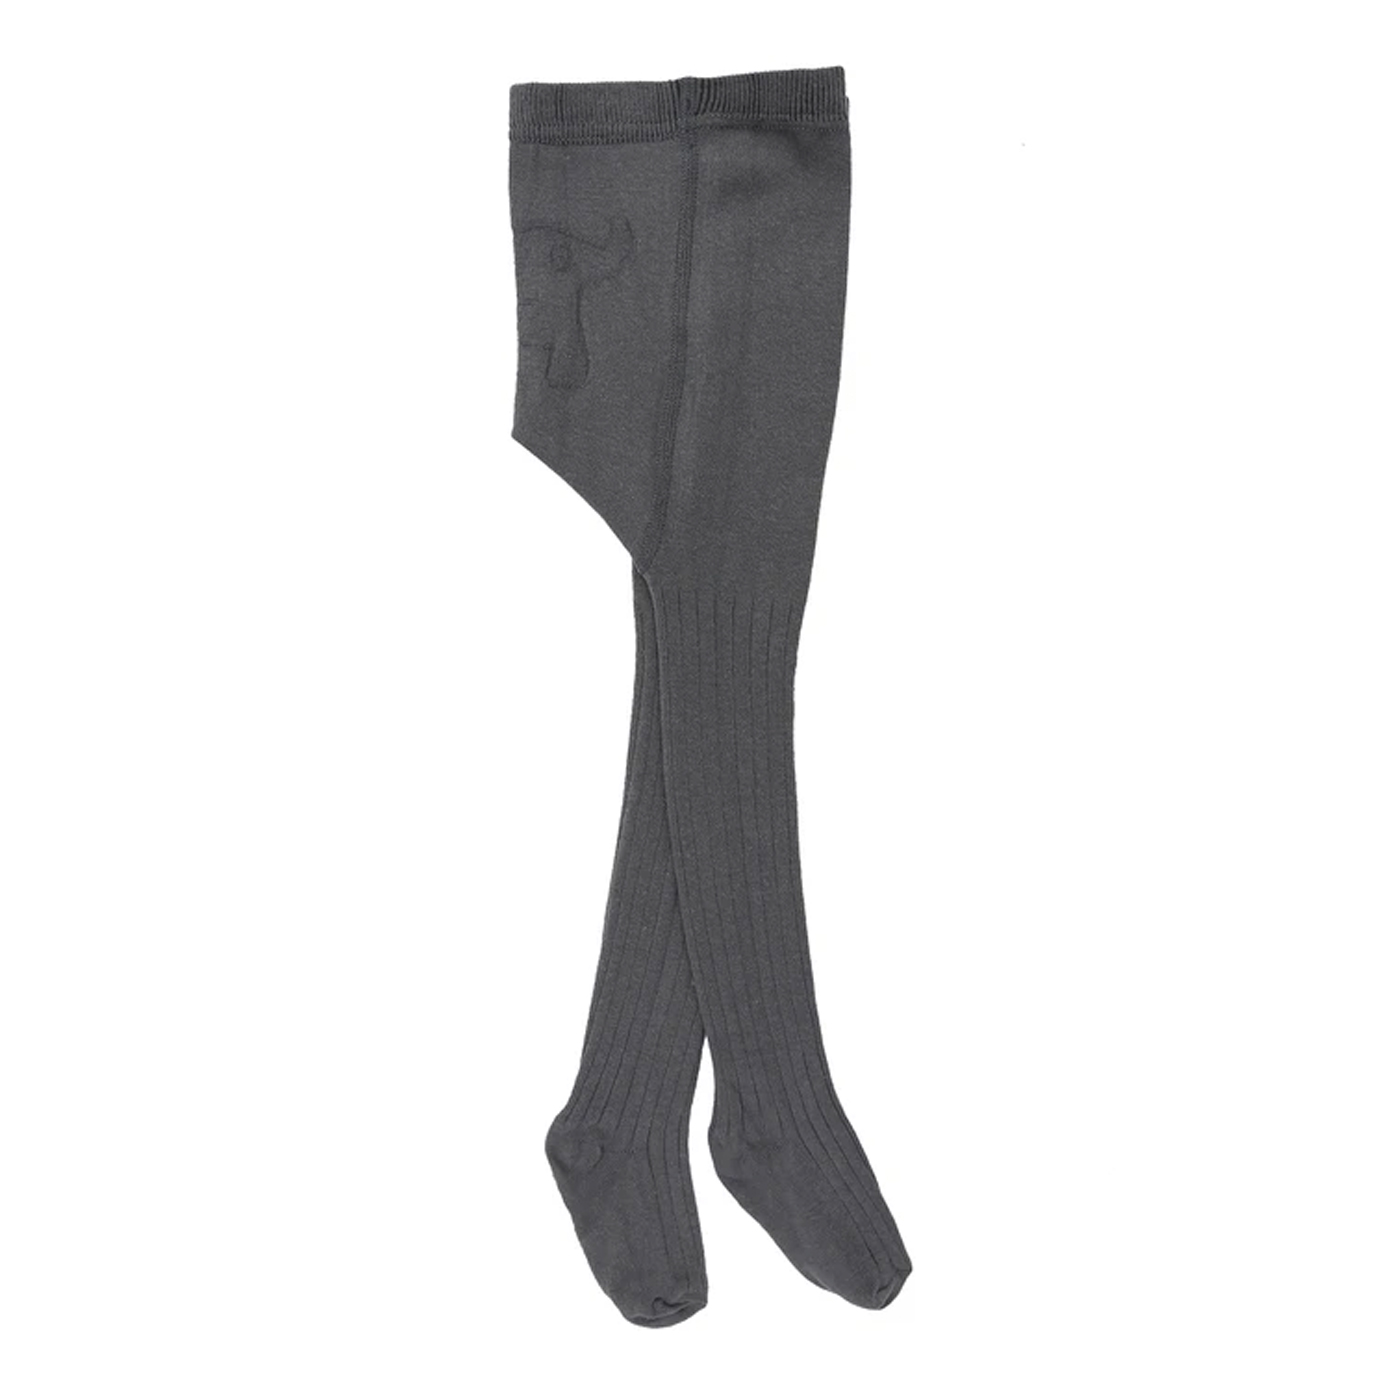 BABOO Baboo Külotlu Çorap  | Gri